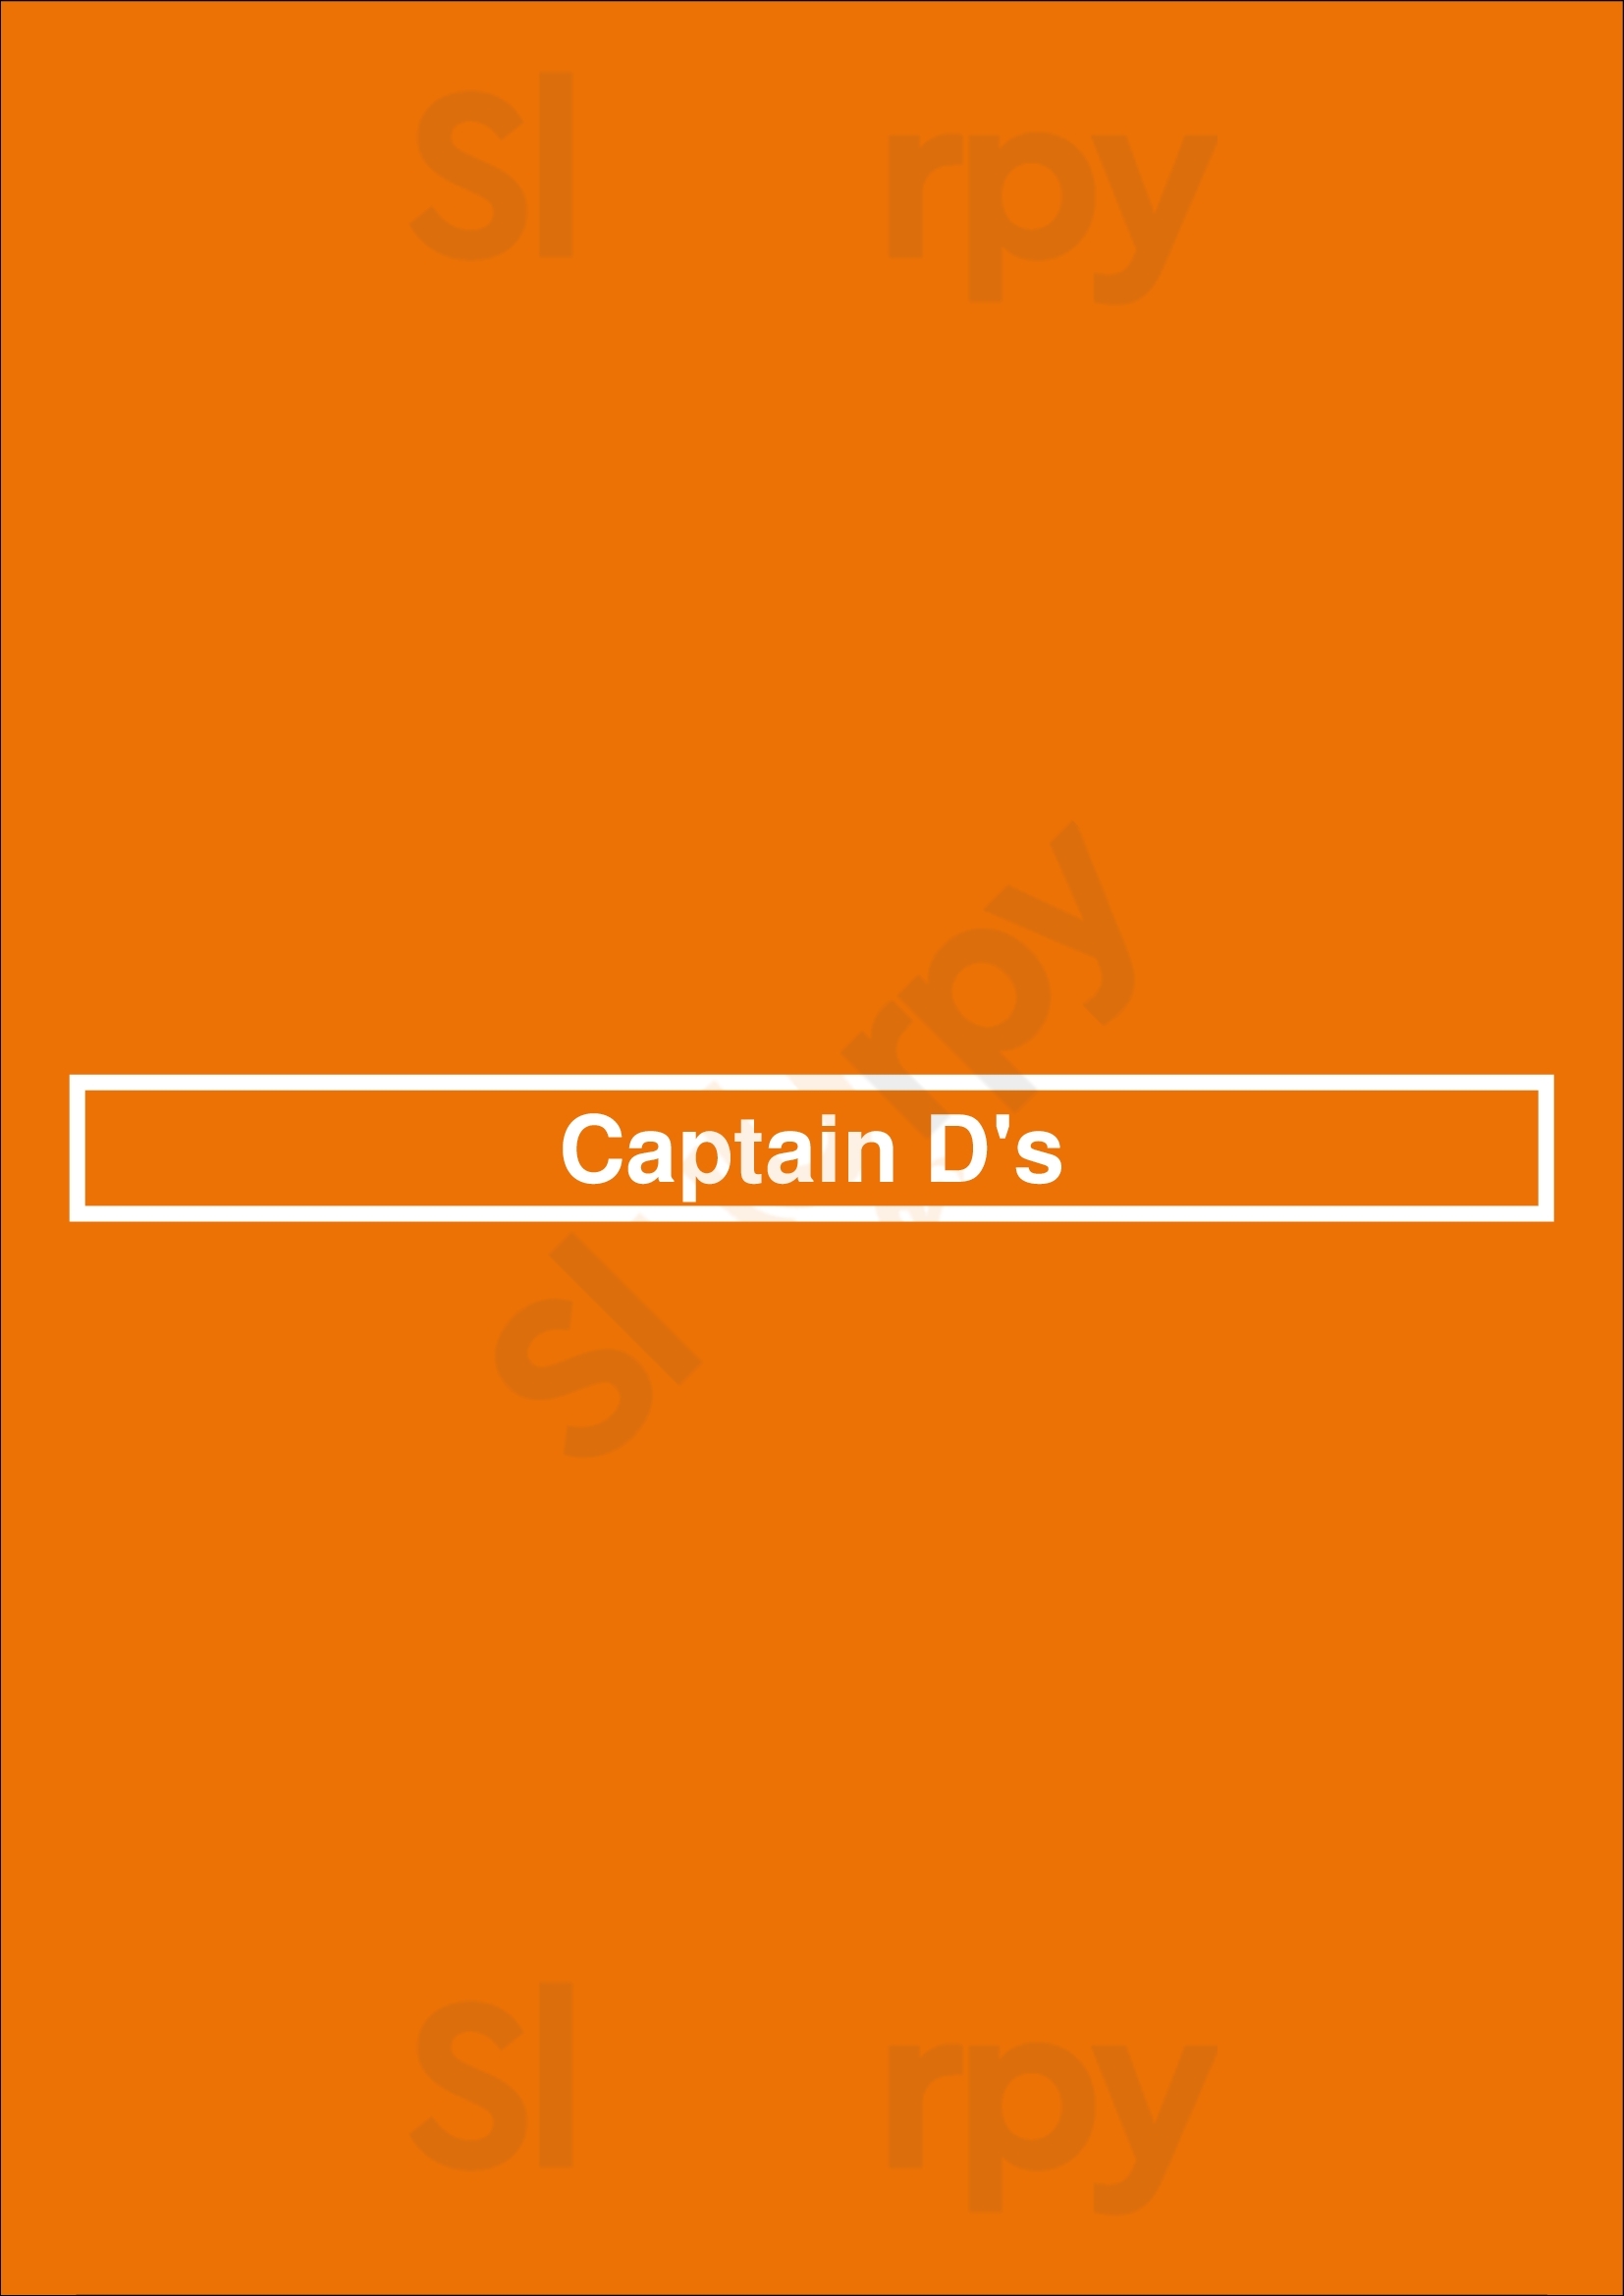 Captain D's Columbus Menu - 1